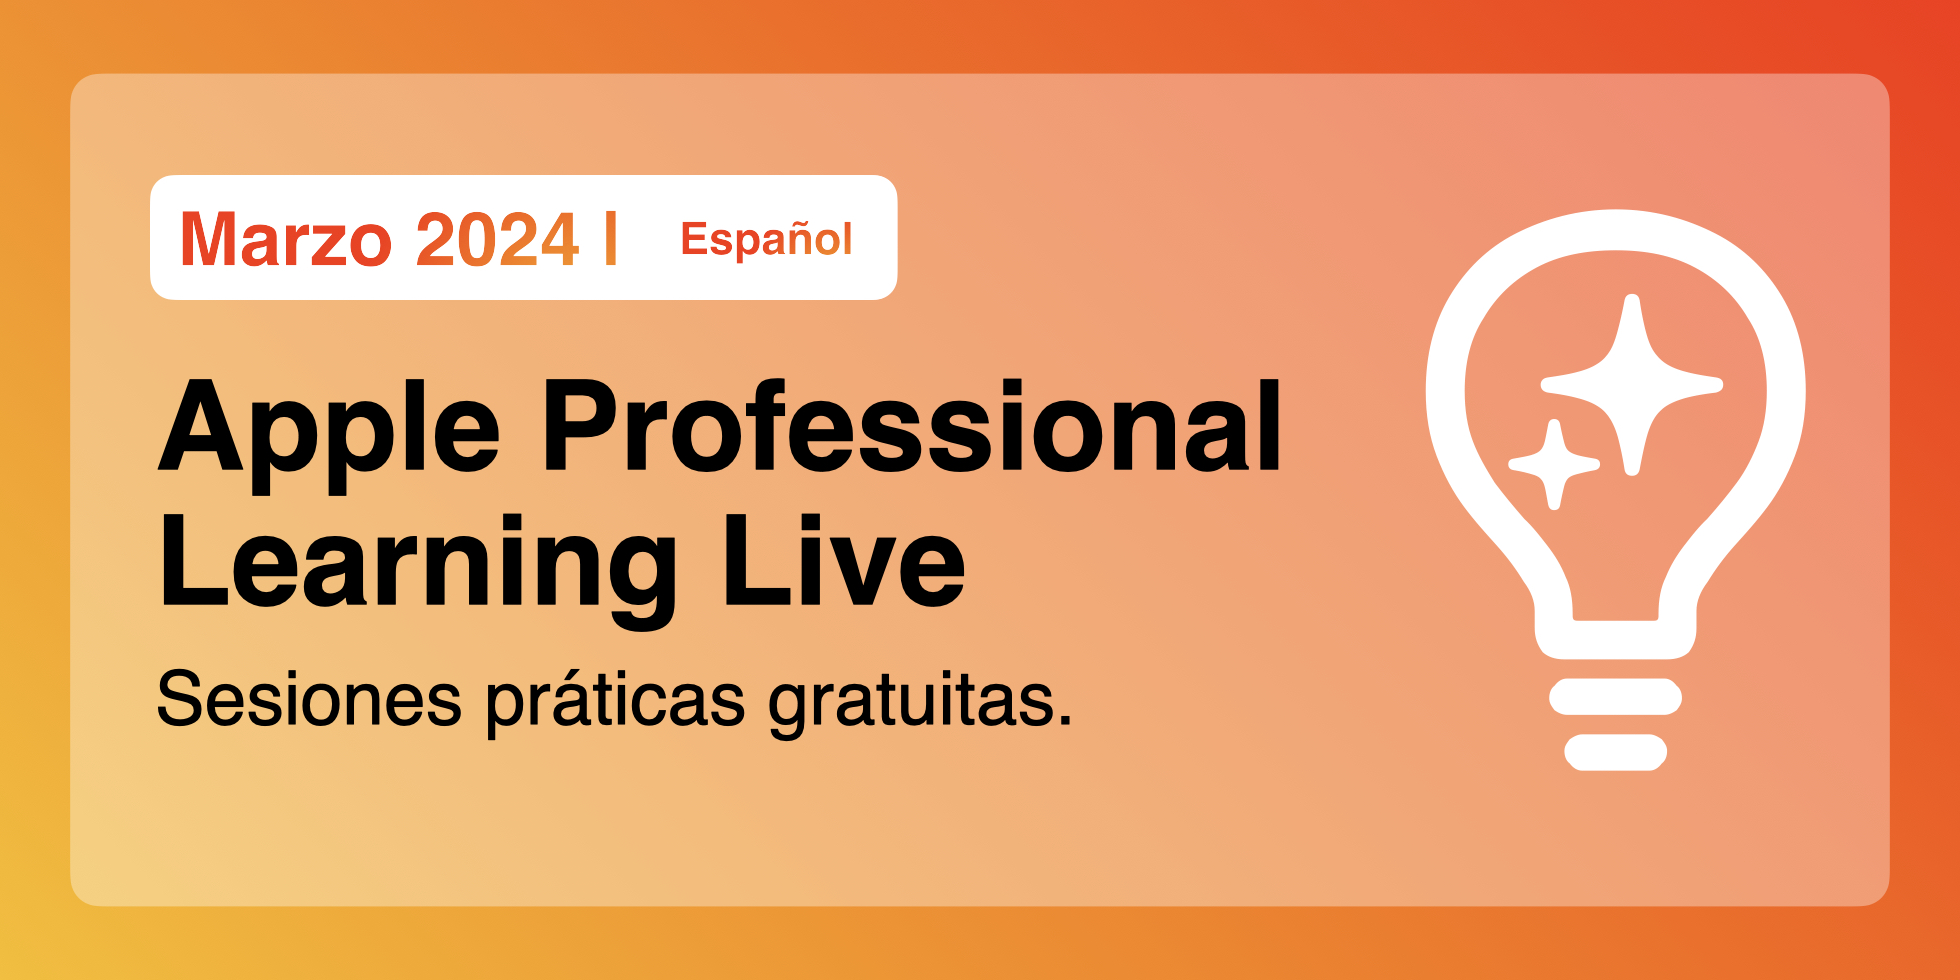 Apple Professional Learning Live en Español: Sesiones Práticas Gratuitas